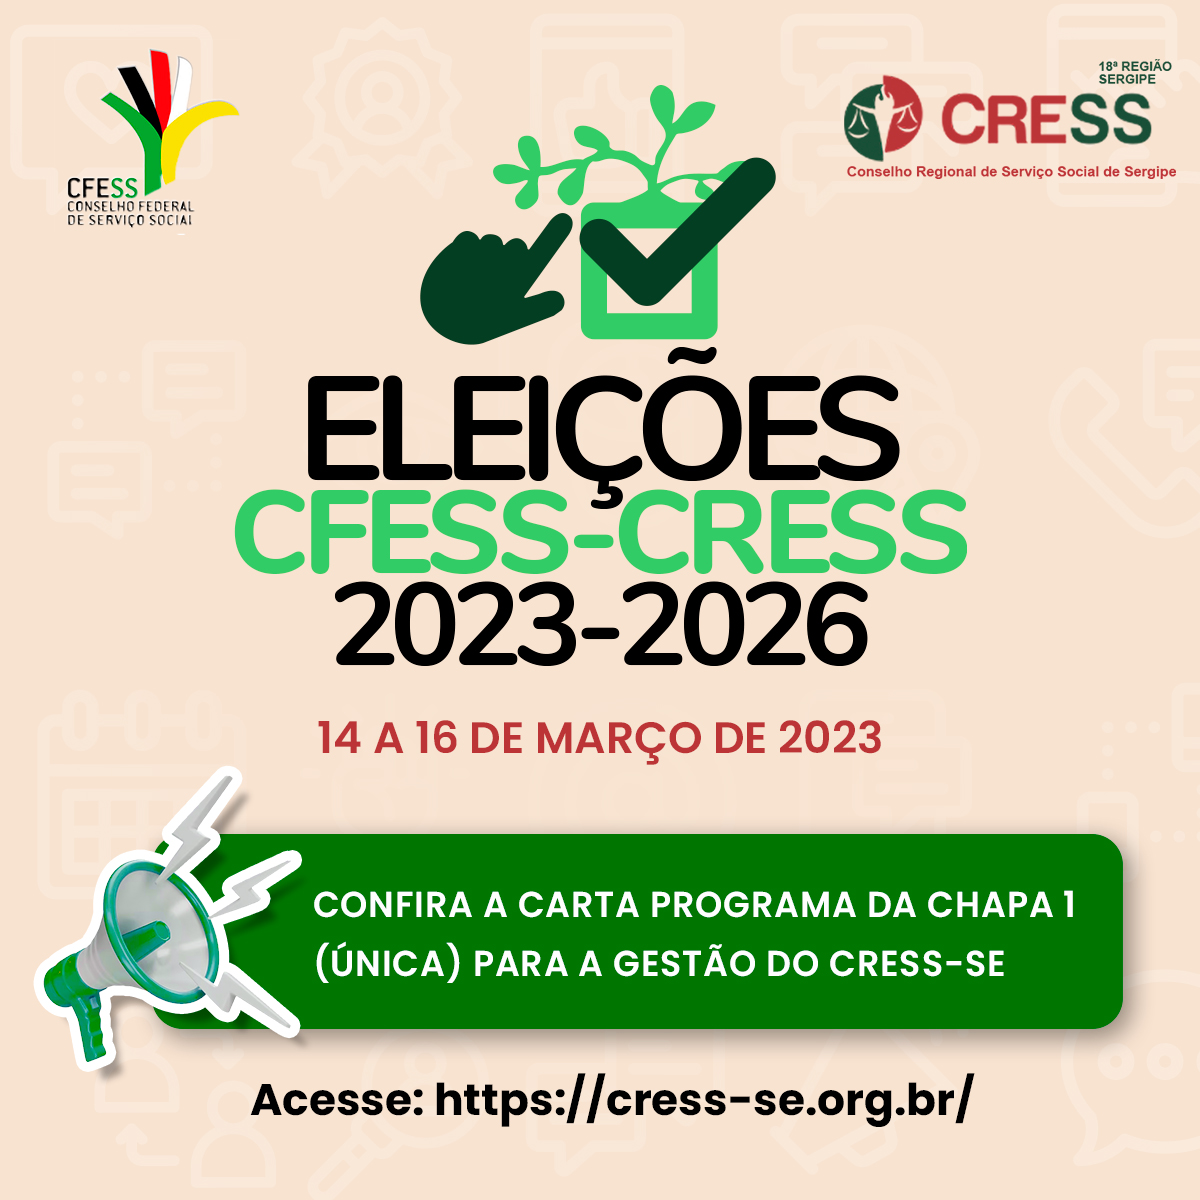 Eleições CFESS-CRESS: Confira a Carta Programa da Chapa 1 para a gestão 2023-2026 do CRESS Sergipe